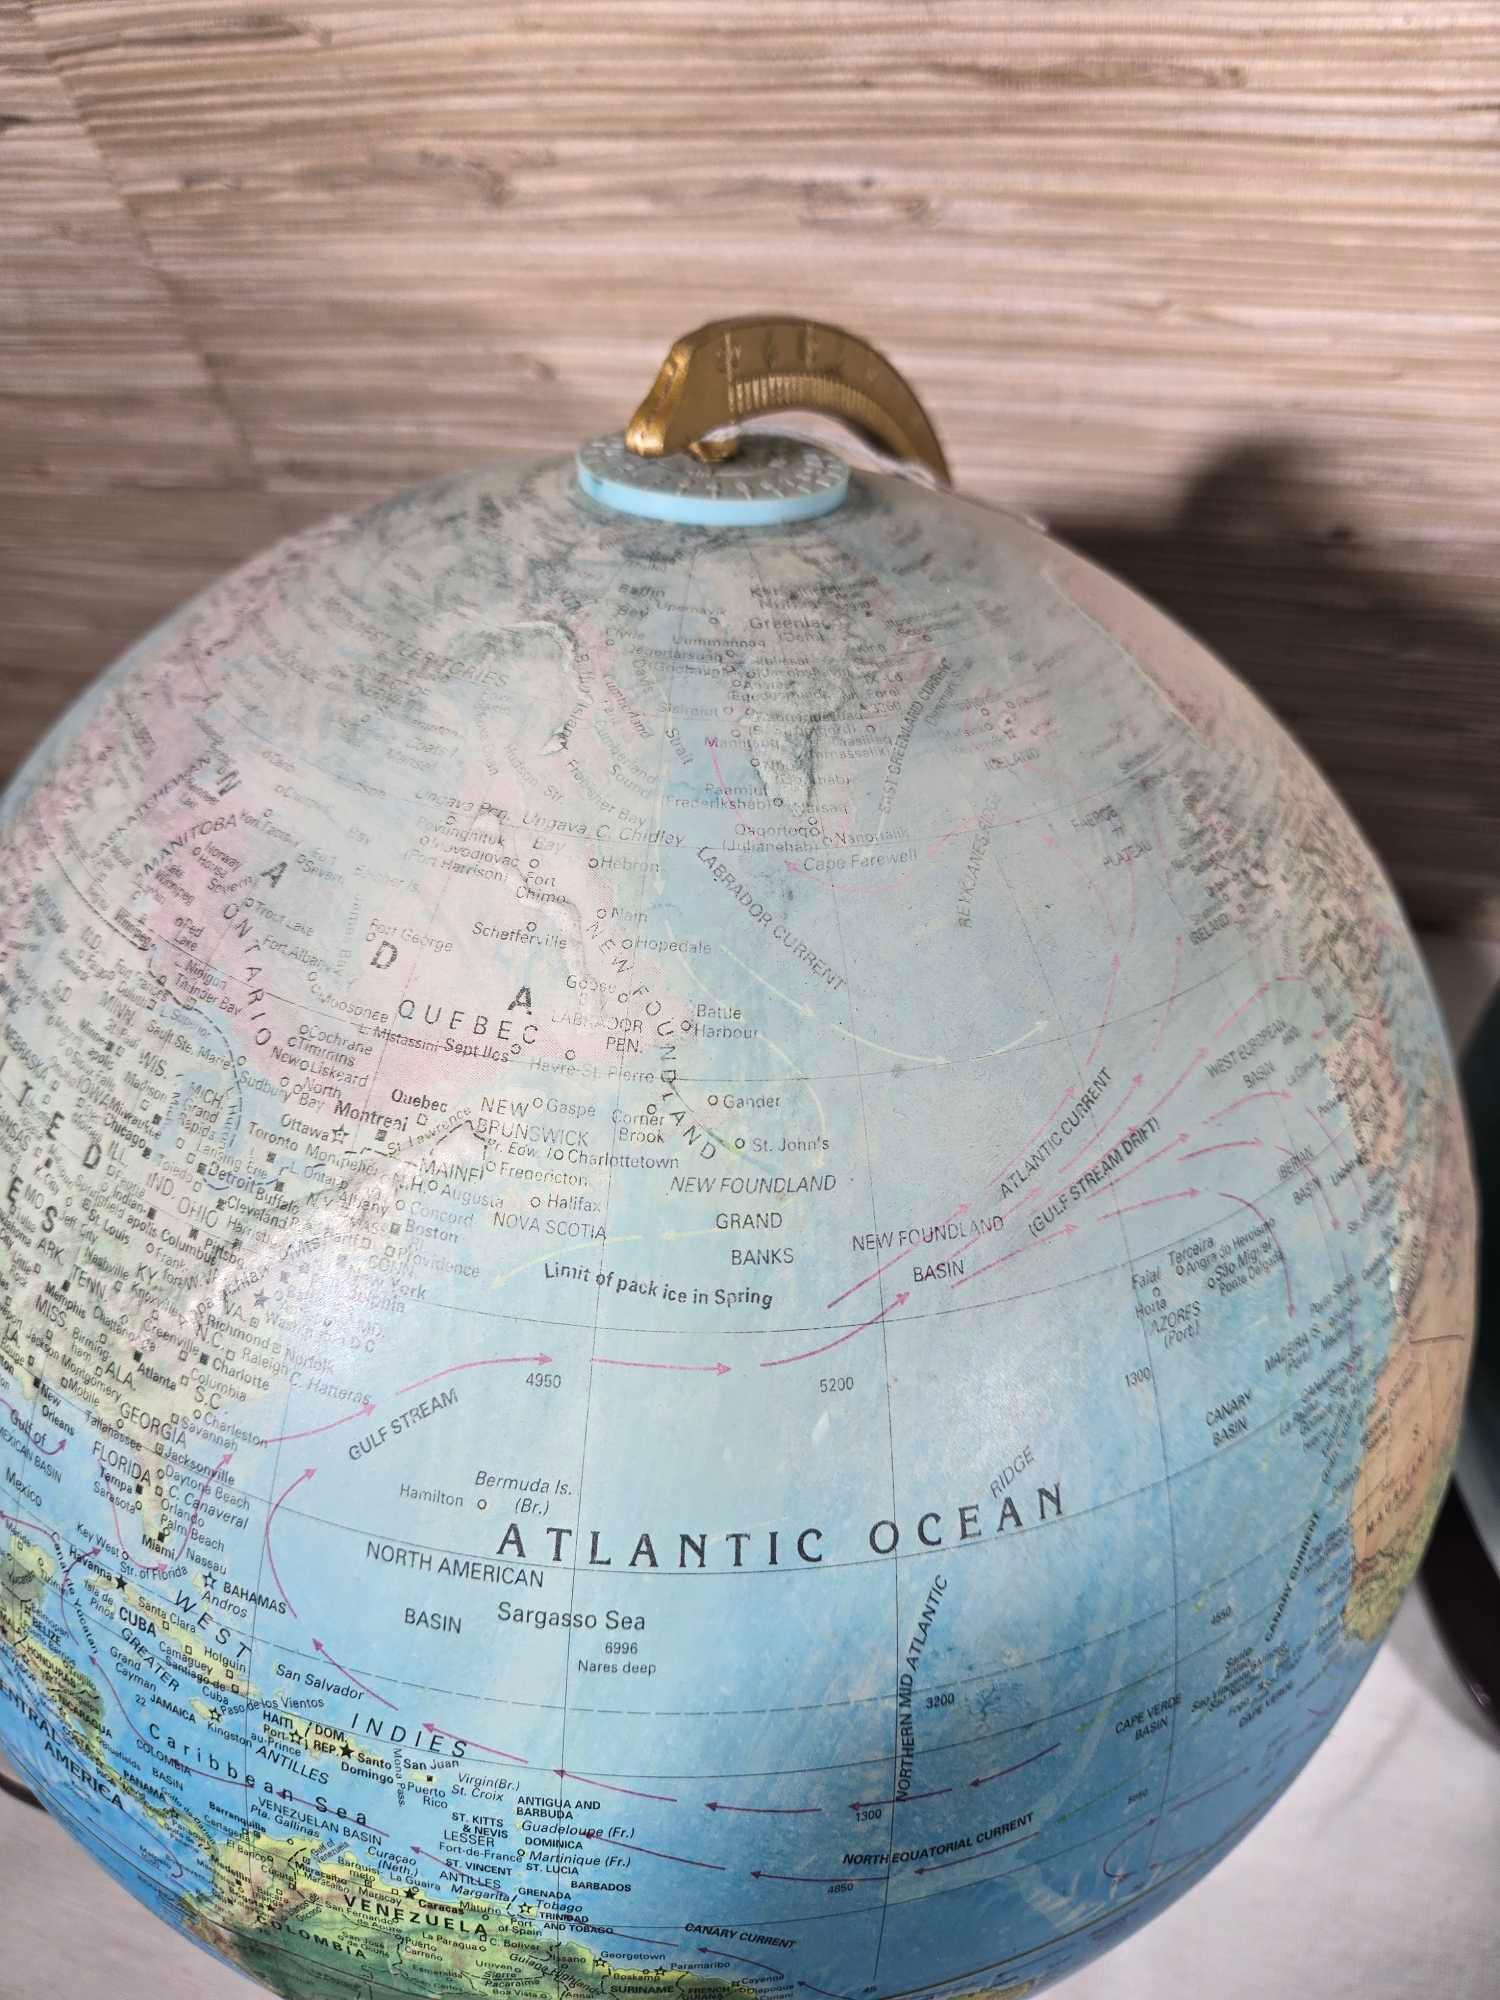 2 Vintage Globes with Lights